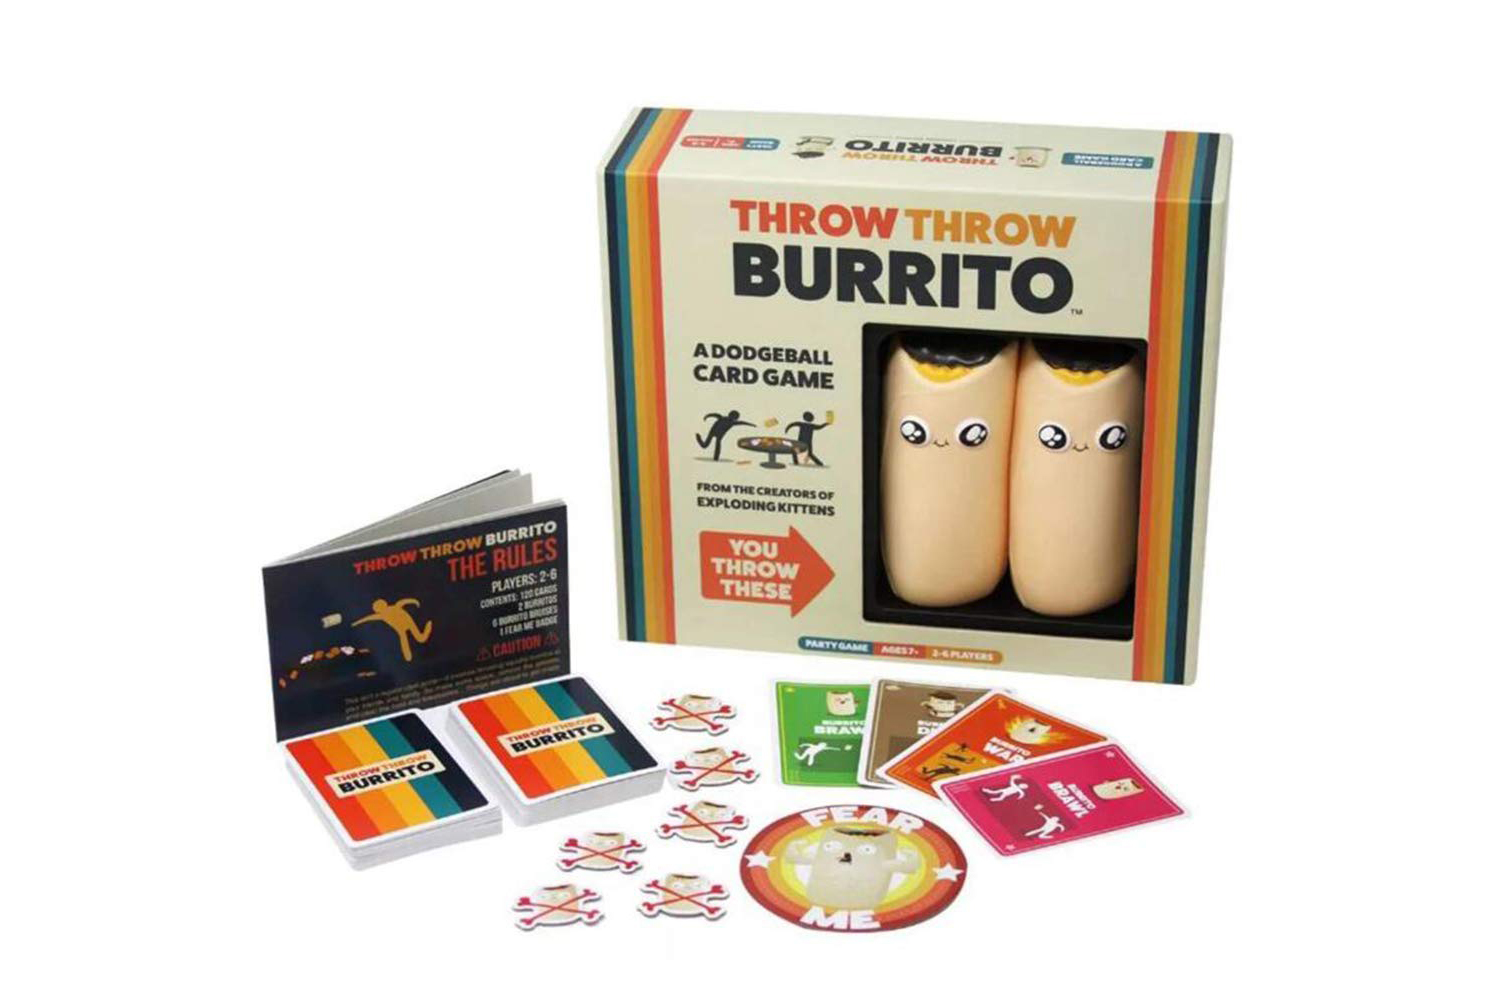 Throw Throw Burrito game